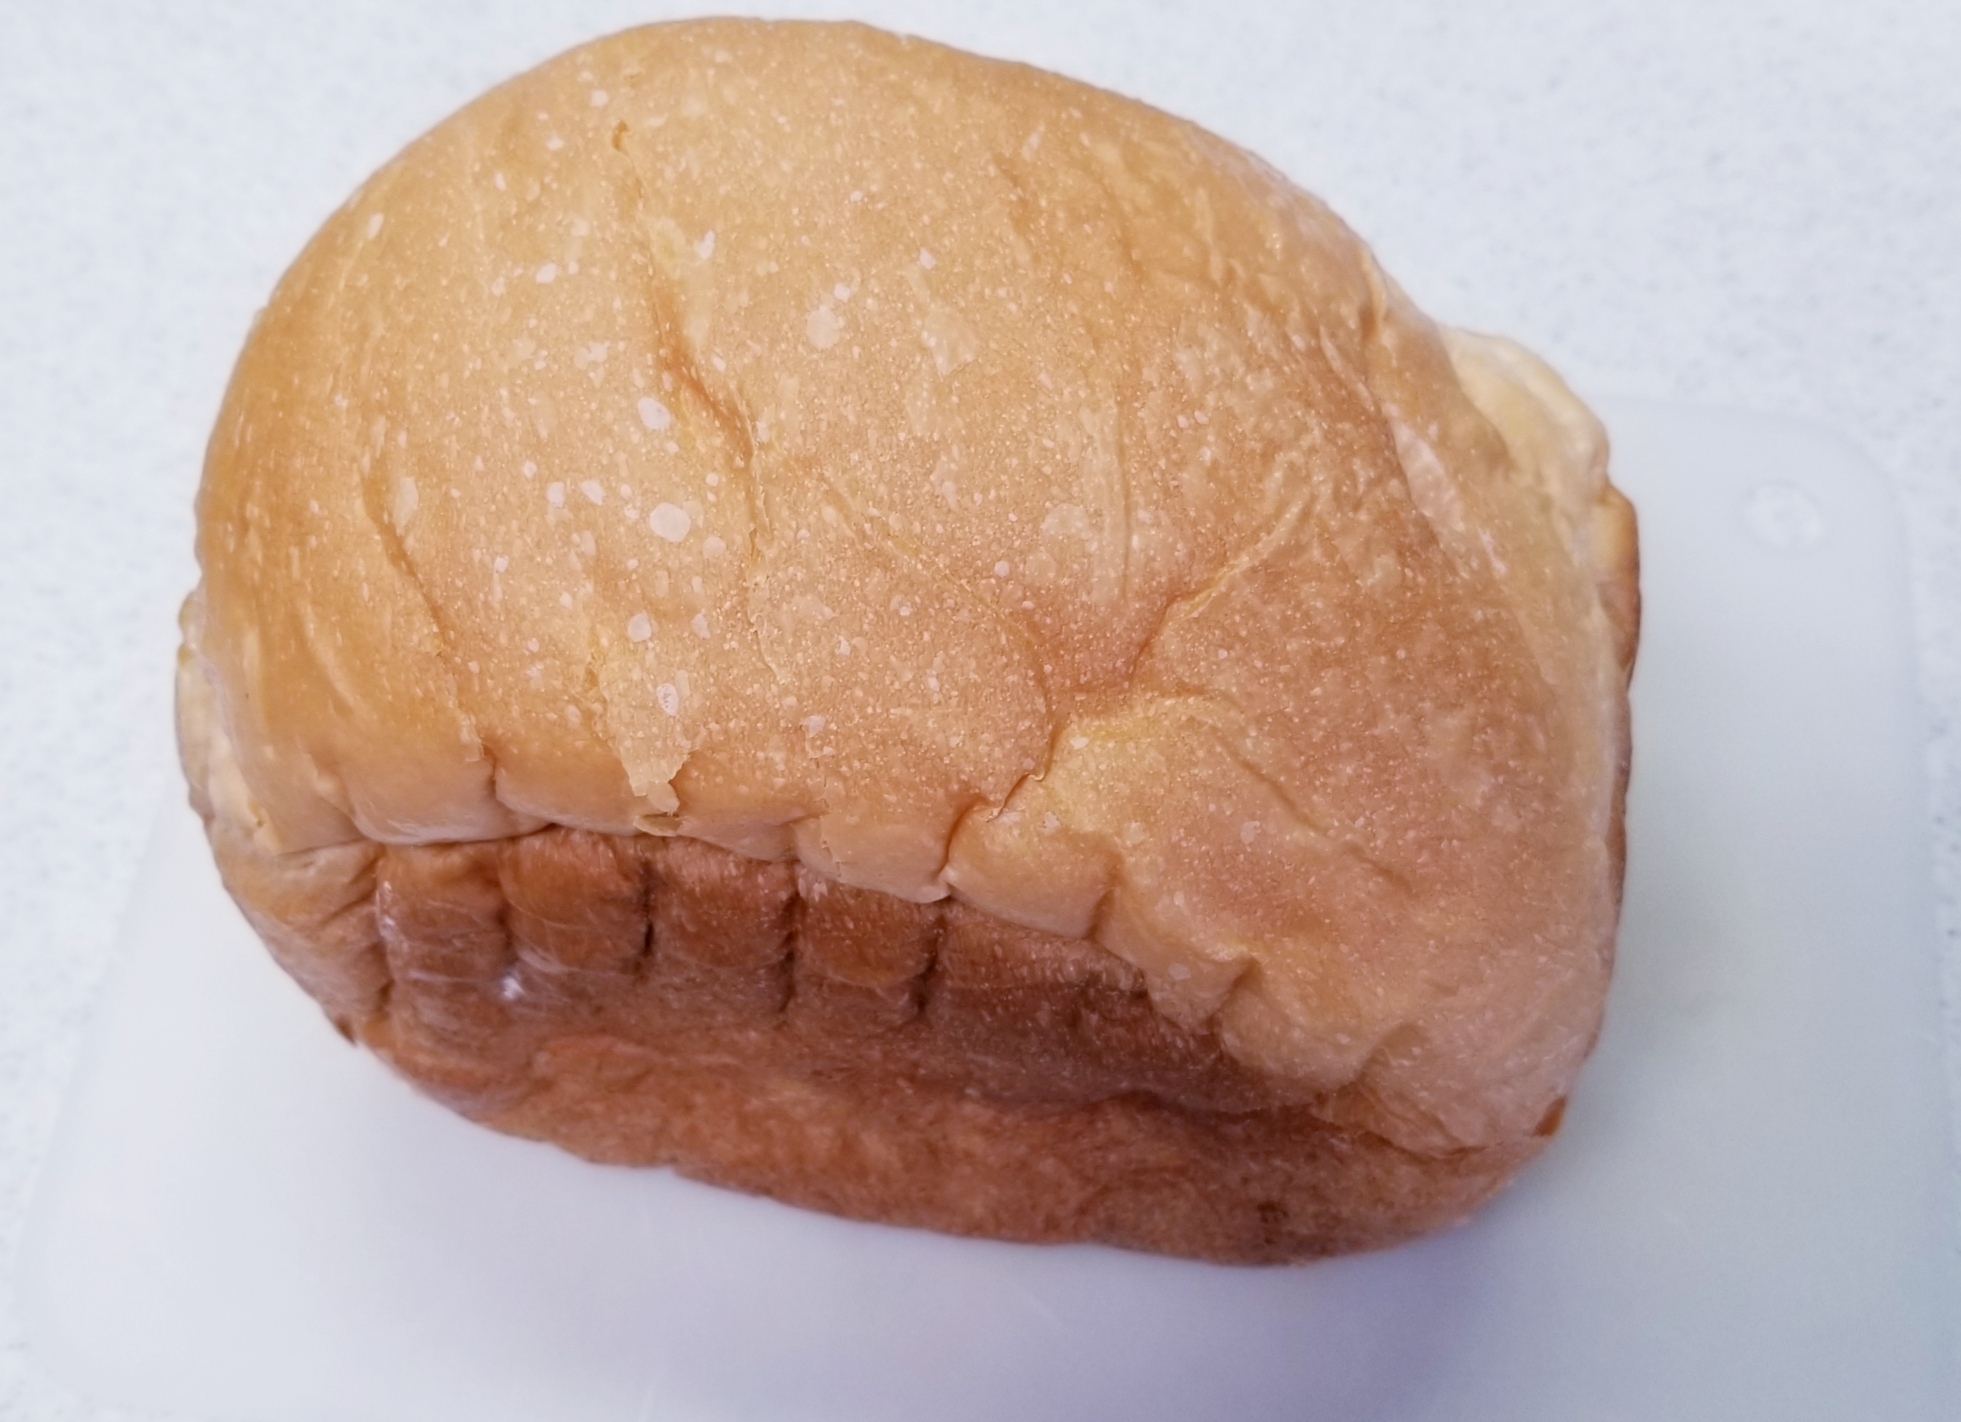 グラニュー糖の食パン★HB